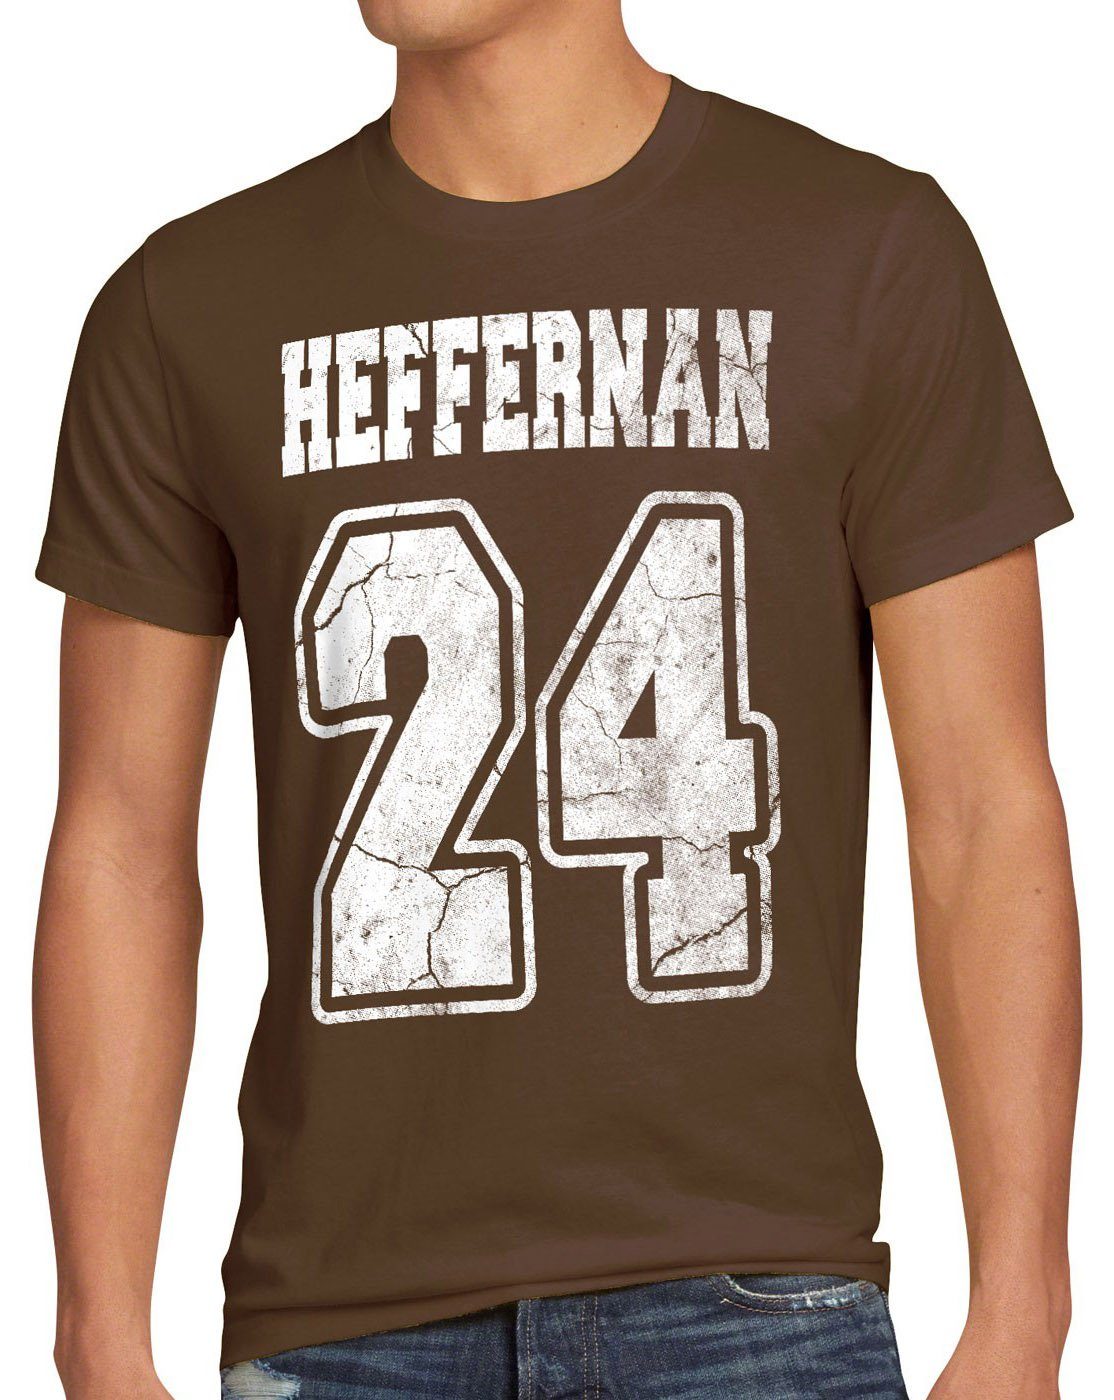 style3 Print-Shirt Herren T-Shirt the braun of Heffernan spooner queens 24 sitcom king IPS coopers doug